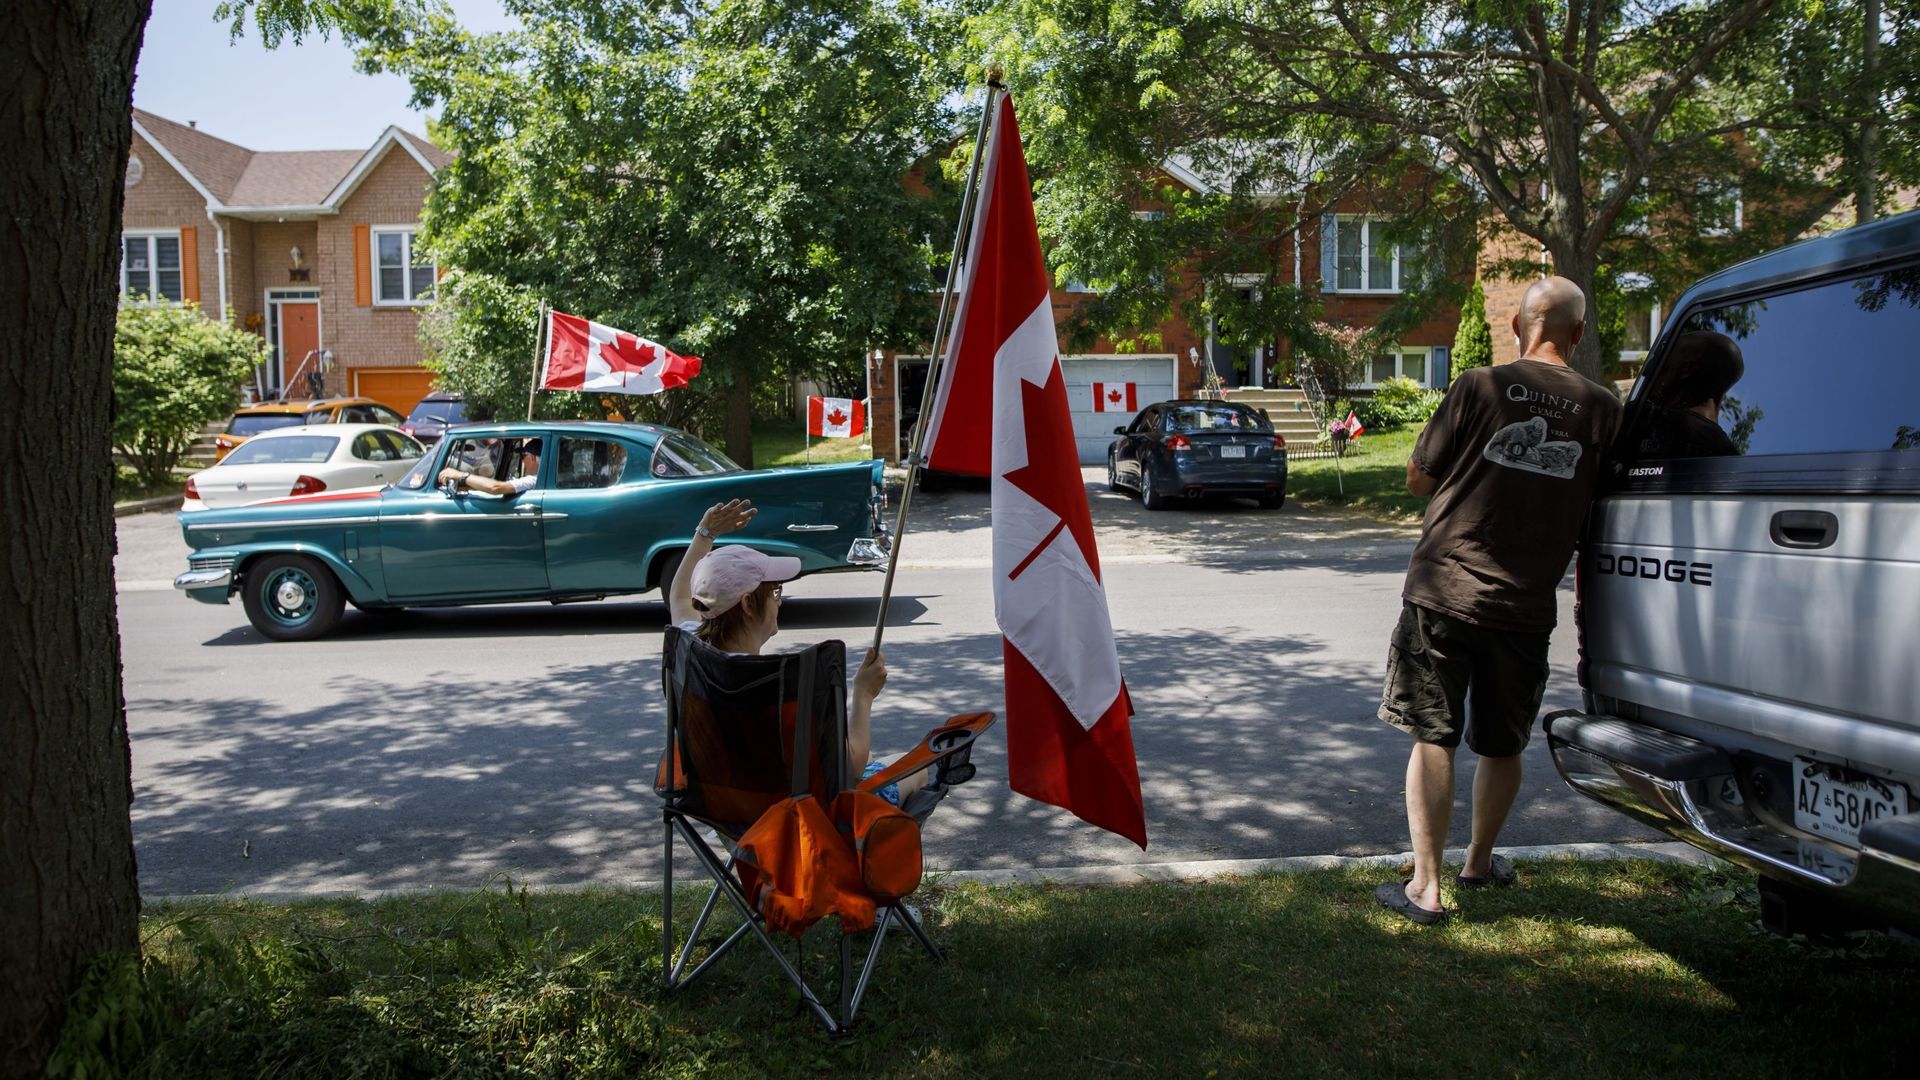 Célébration lors de la fête nationale du Canada, le 1er juillet 2020, en pleine pandémie de Covid-19. Newcastle, Ontario, Canada.